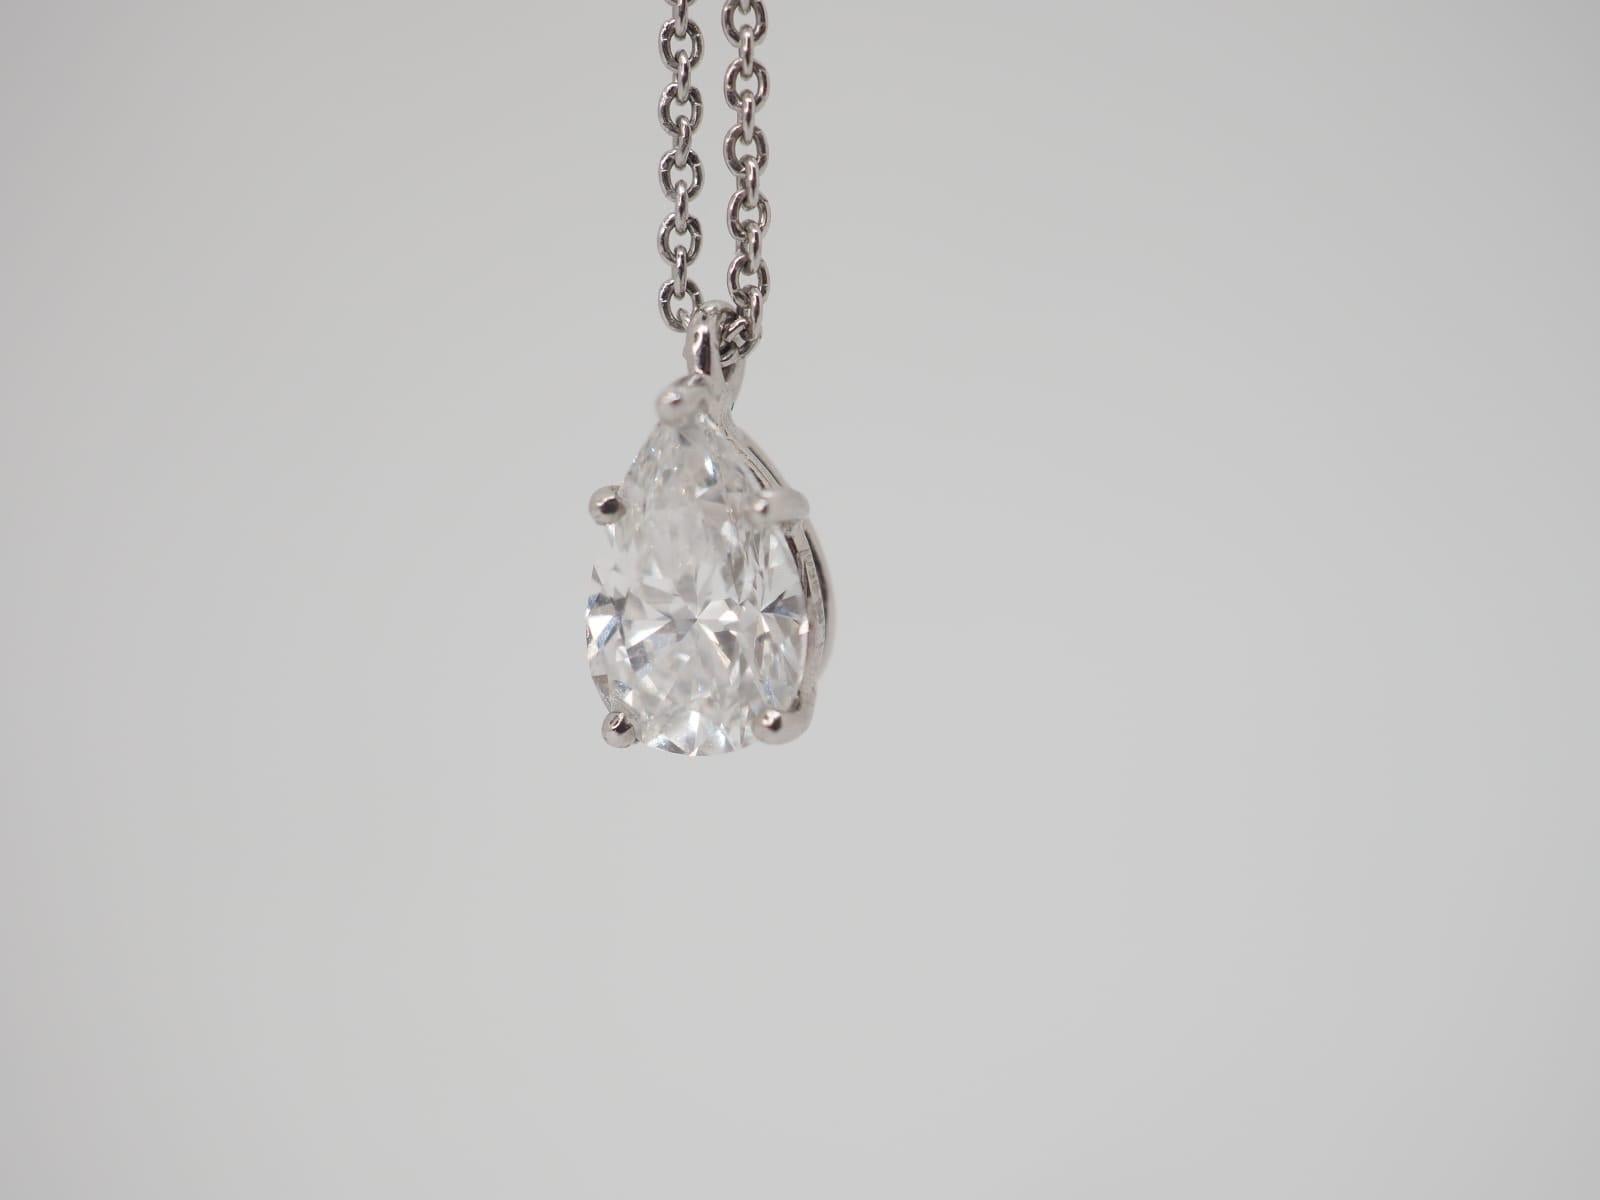 Le collier en diamant Graff authentique, avec son pendentif en diamant poire d'une élégance infinie, est particulièrement séduisant. Sa silhouette épurée est complétée par une délicate chaîne en platine qui permet à la pierre d'occuper le devant de